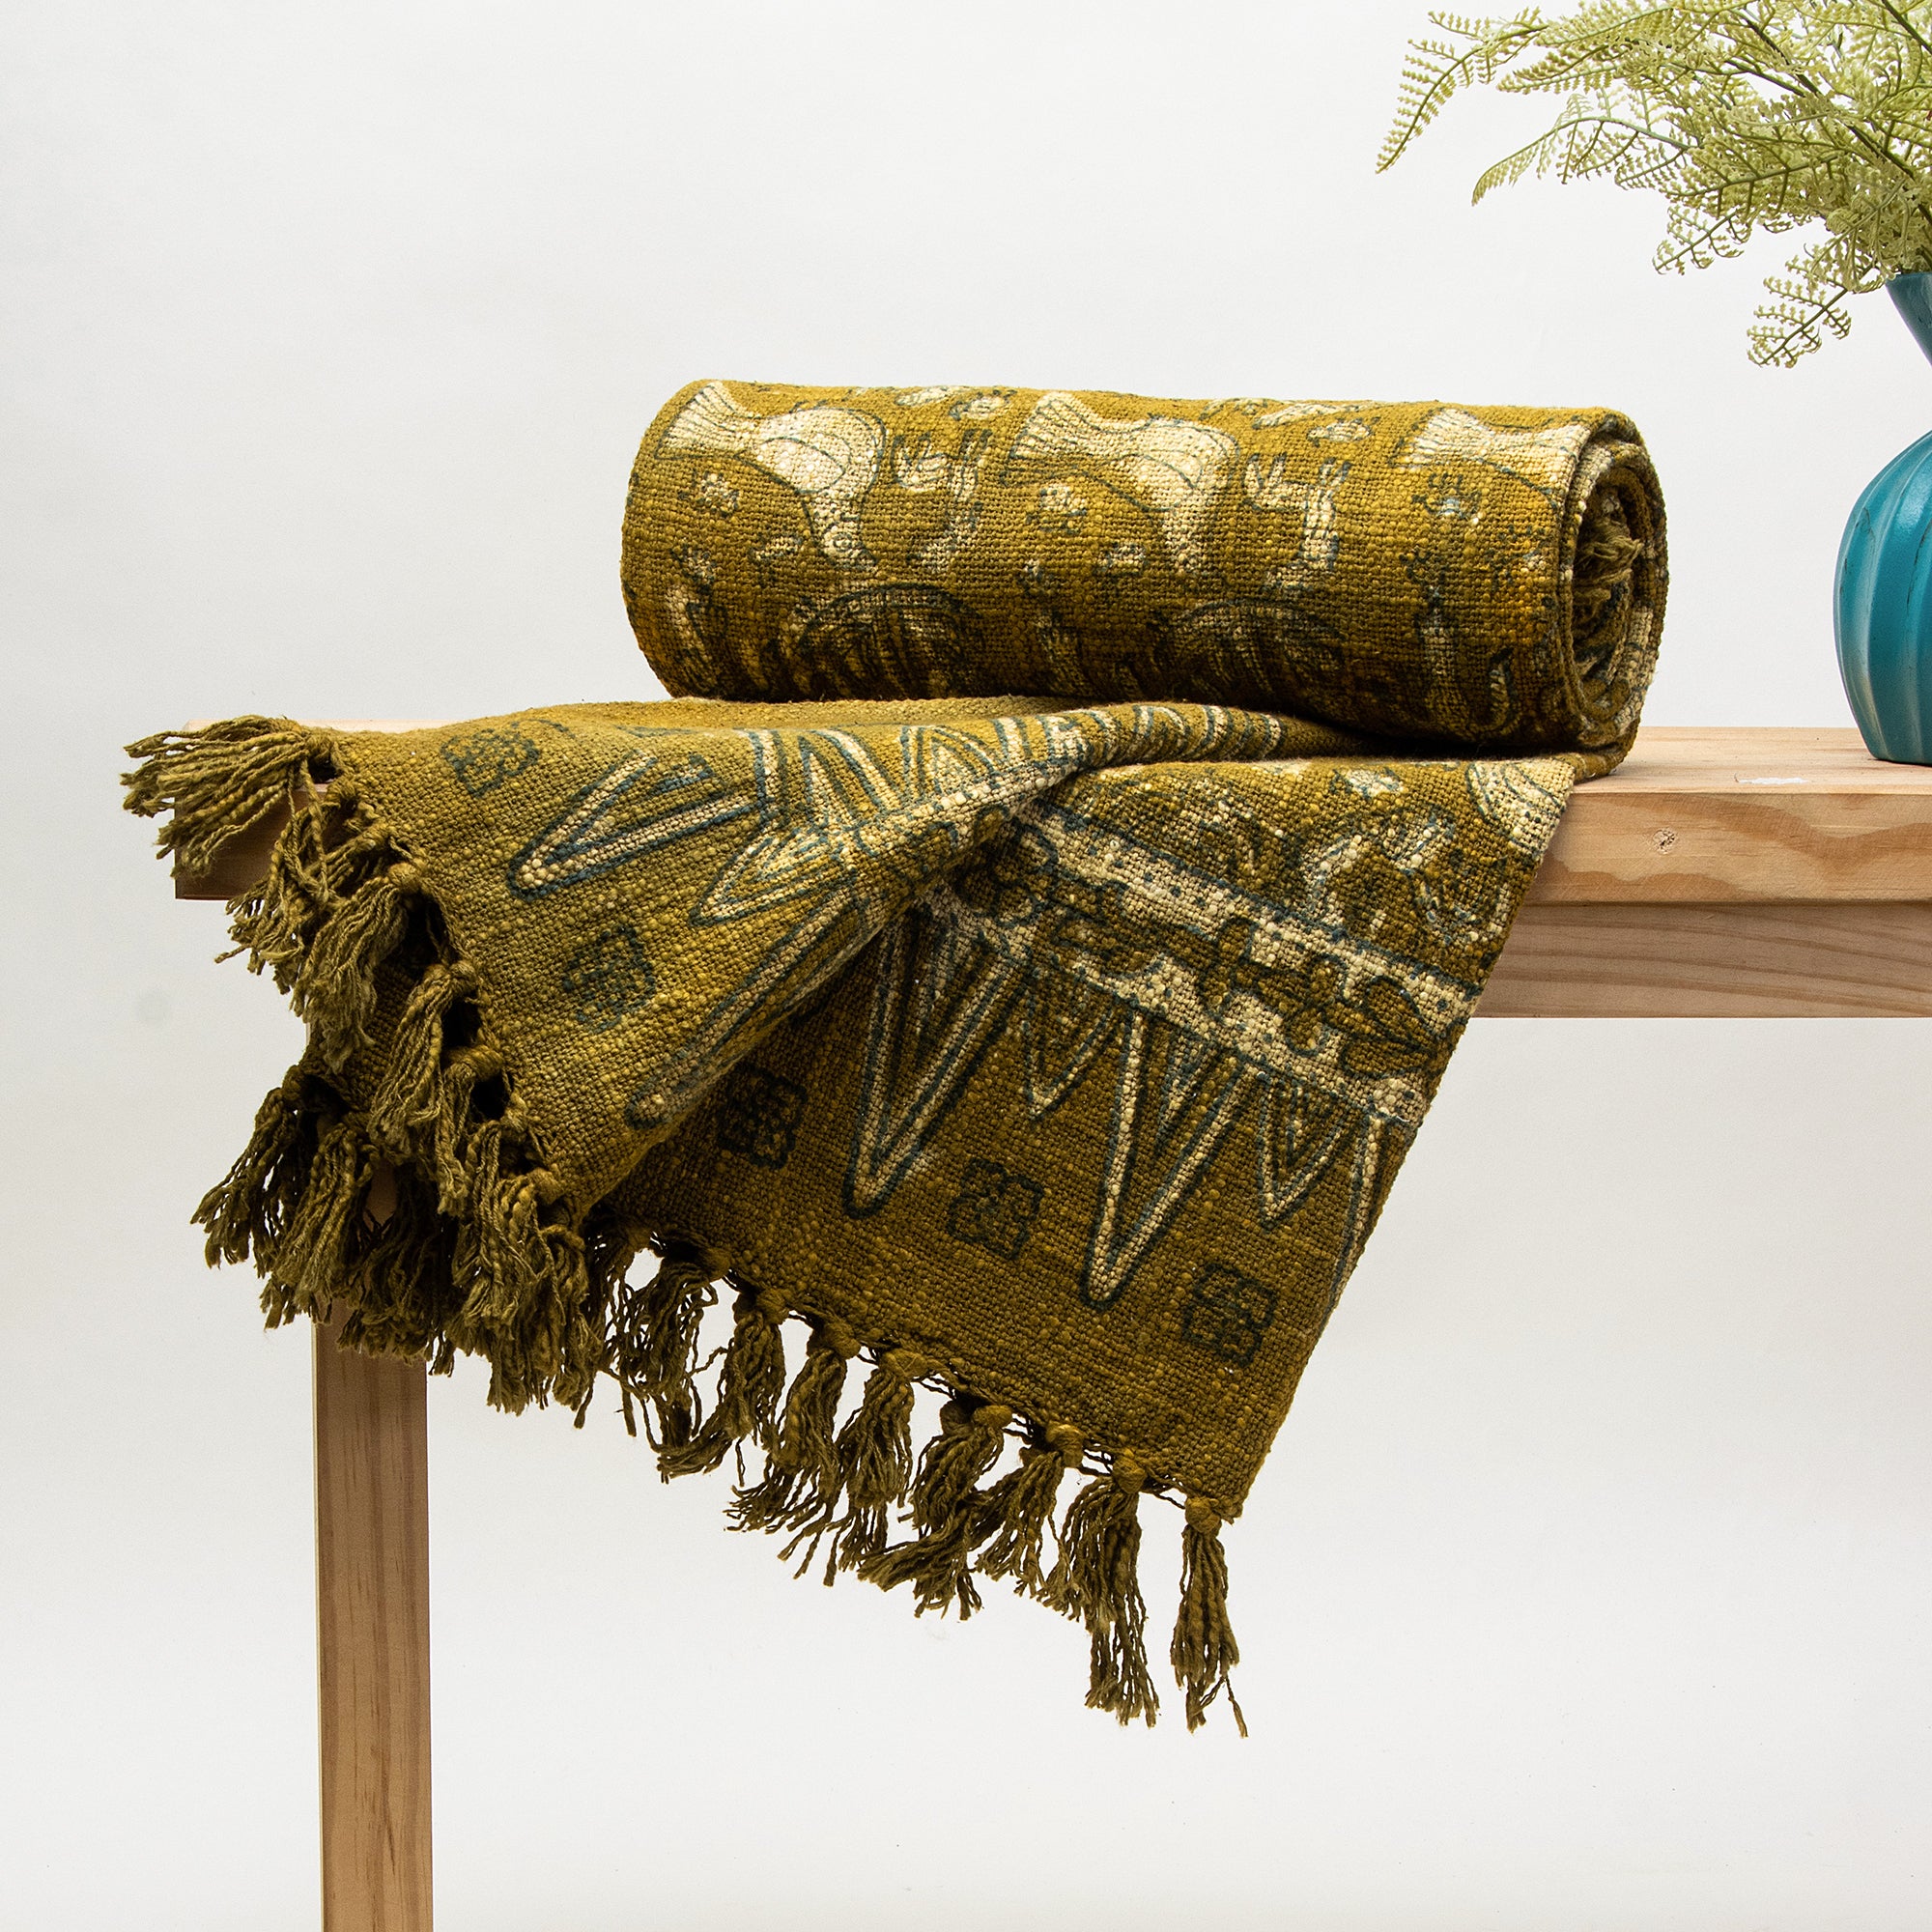 Brown Bird Hand Block Design Cotton Decorative Throw Blankets